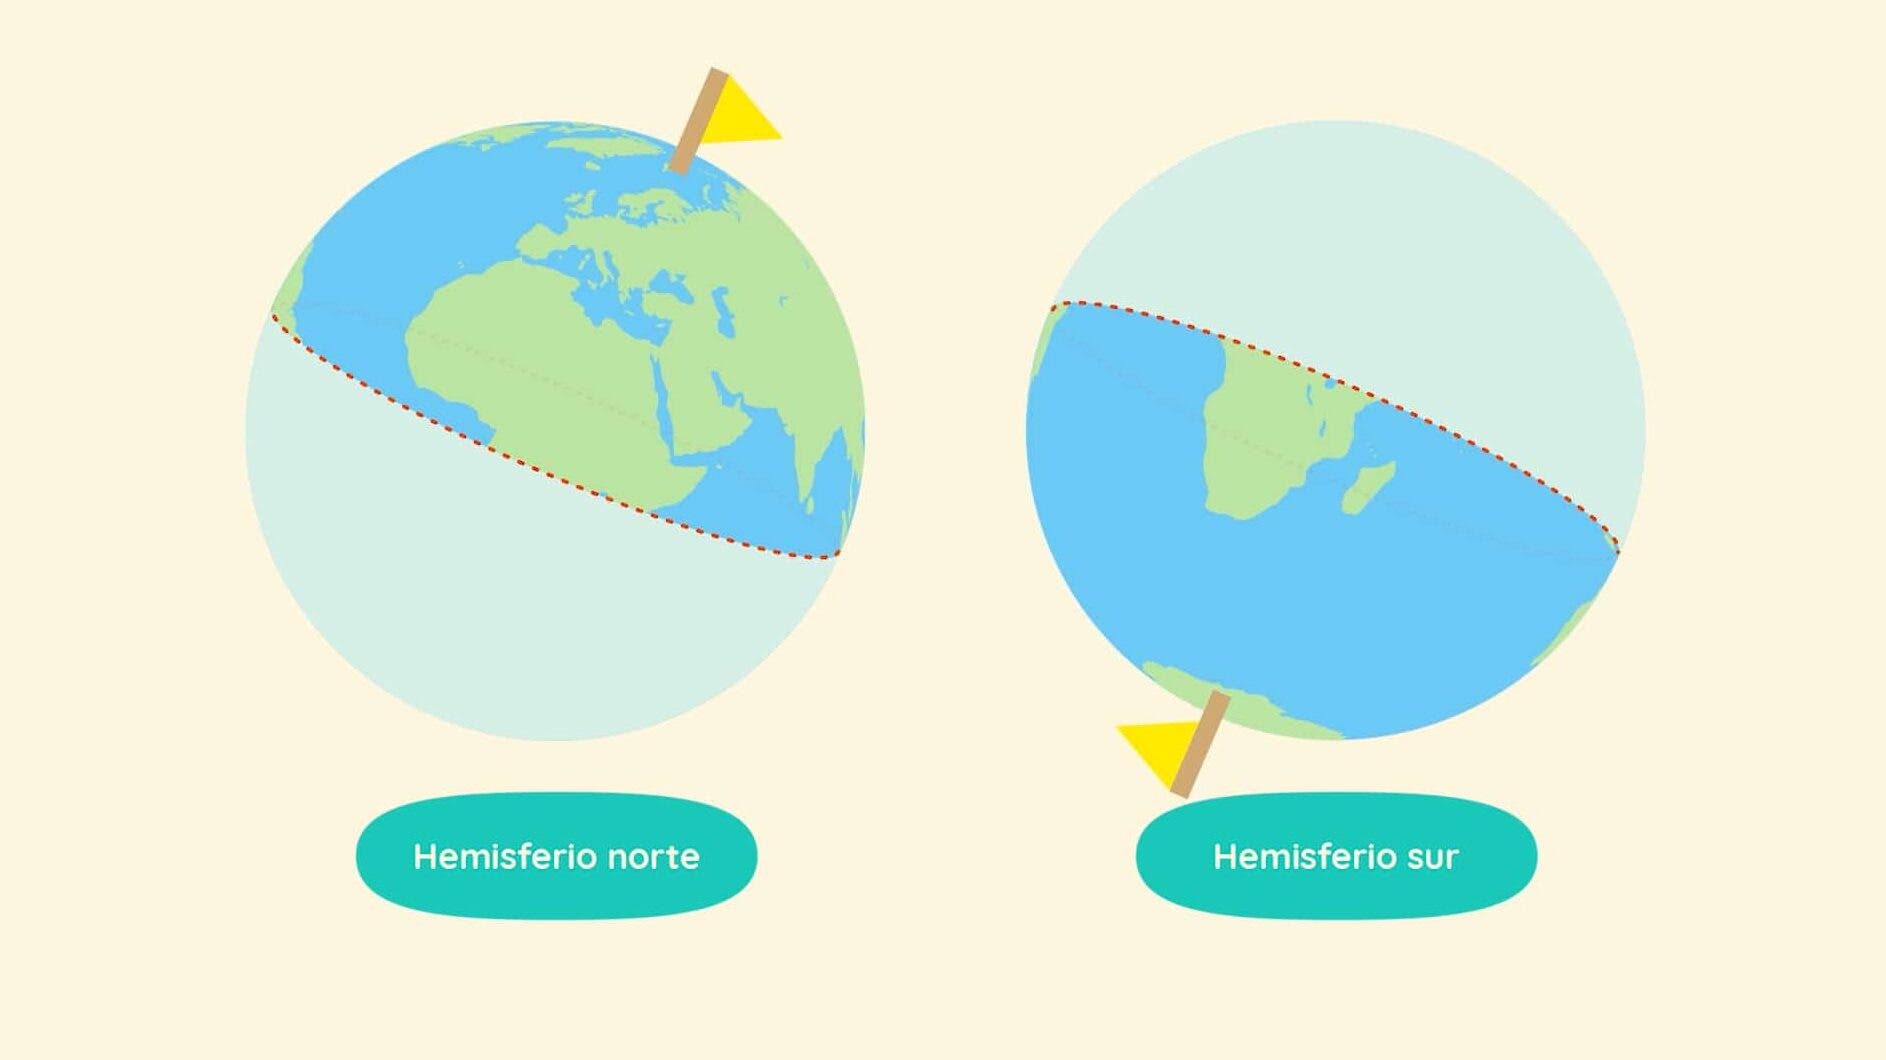 Animal Crossing: New Horizons detalla los dos hemisferios que podemos escoger en el juego